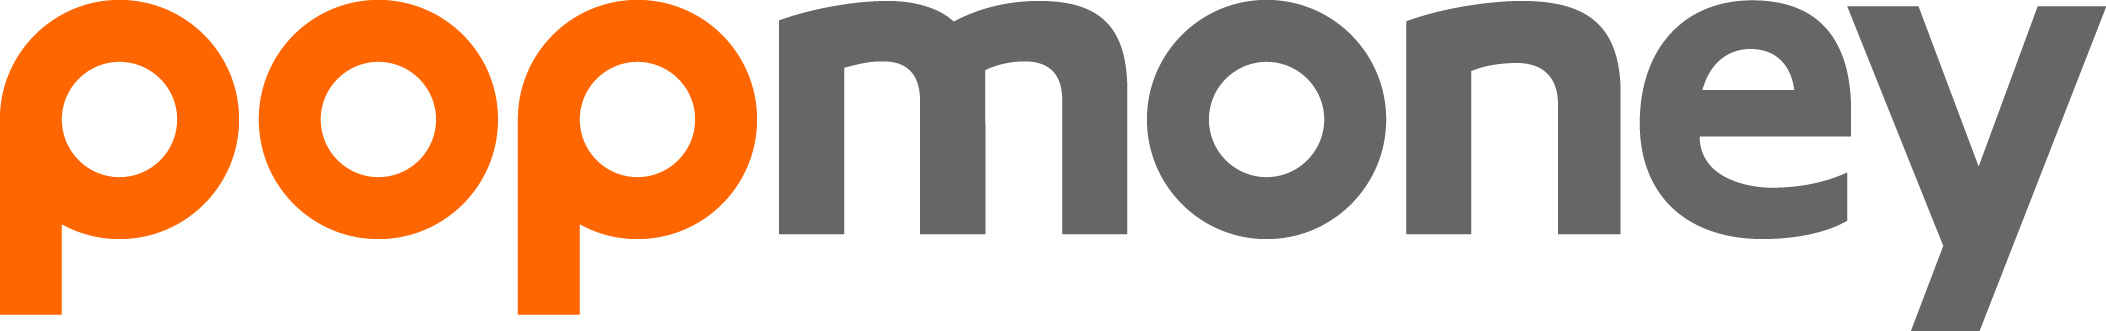 pop money logo